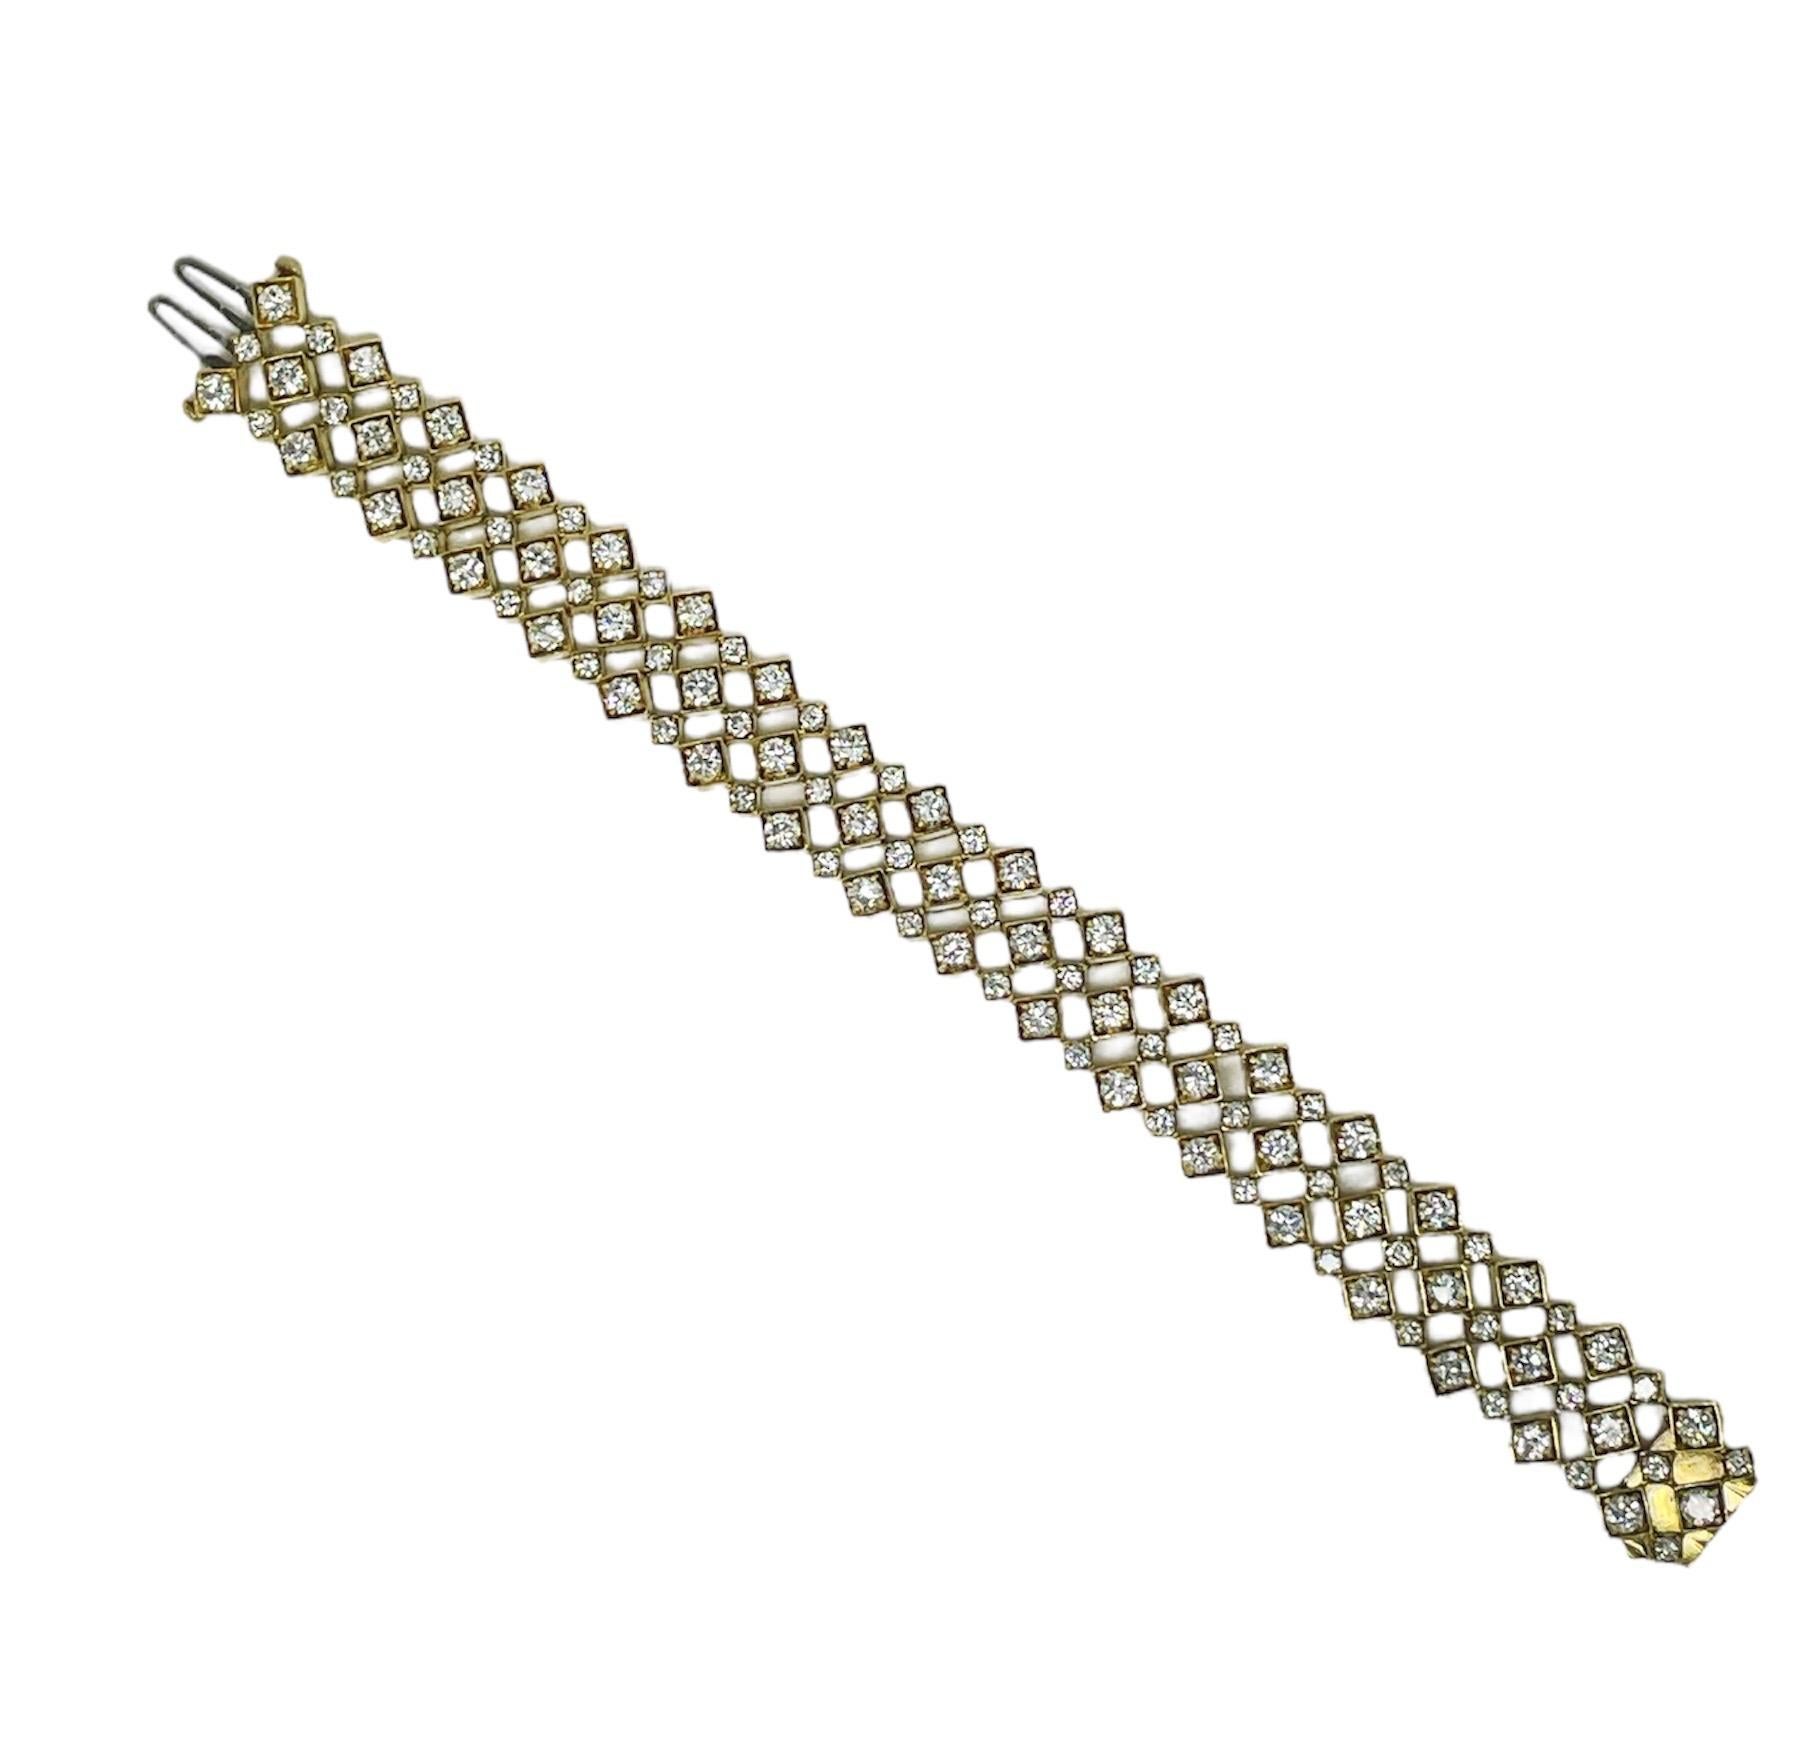 Ce bracelet au design géométrique amusant contient 108 diamants ronds de taille brillant de première qualité pesant au total environ 11,86 carats. Ce bracelet en or jaune 18 carats, au design ajouré, est extrêmement confortable et facile à porter au